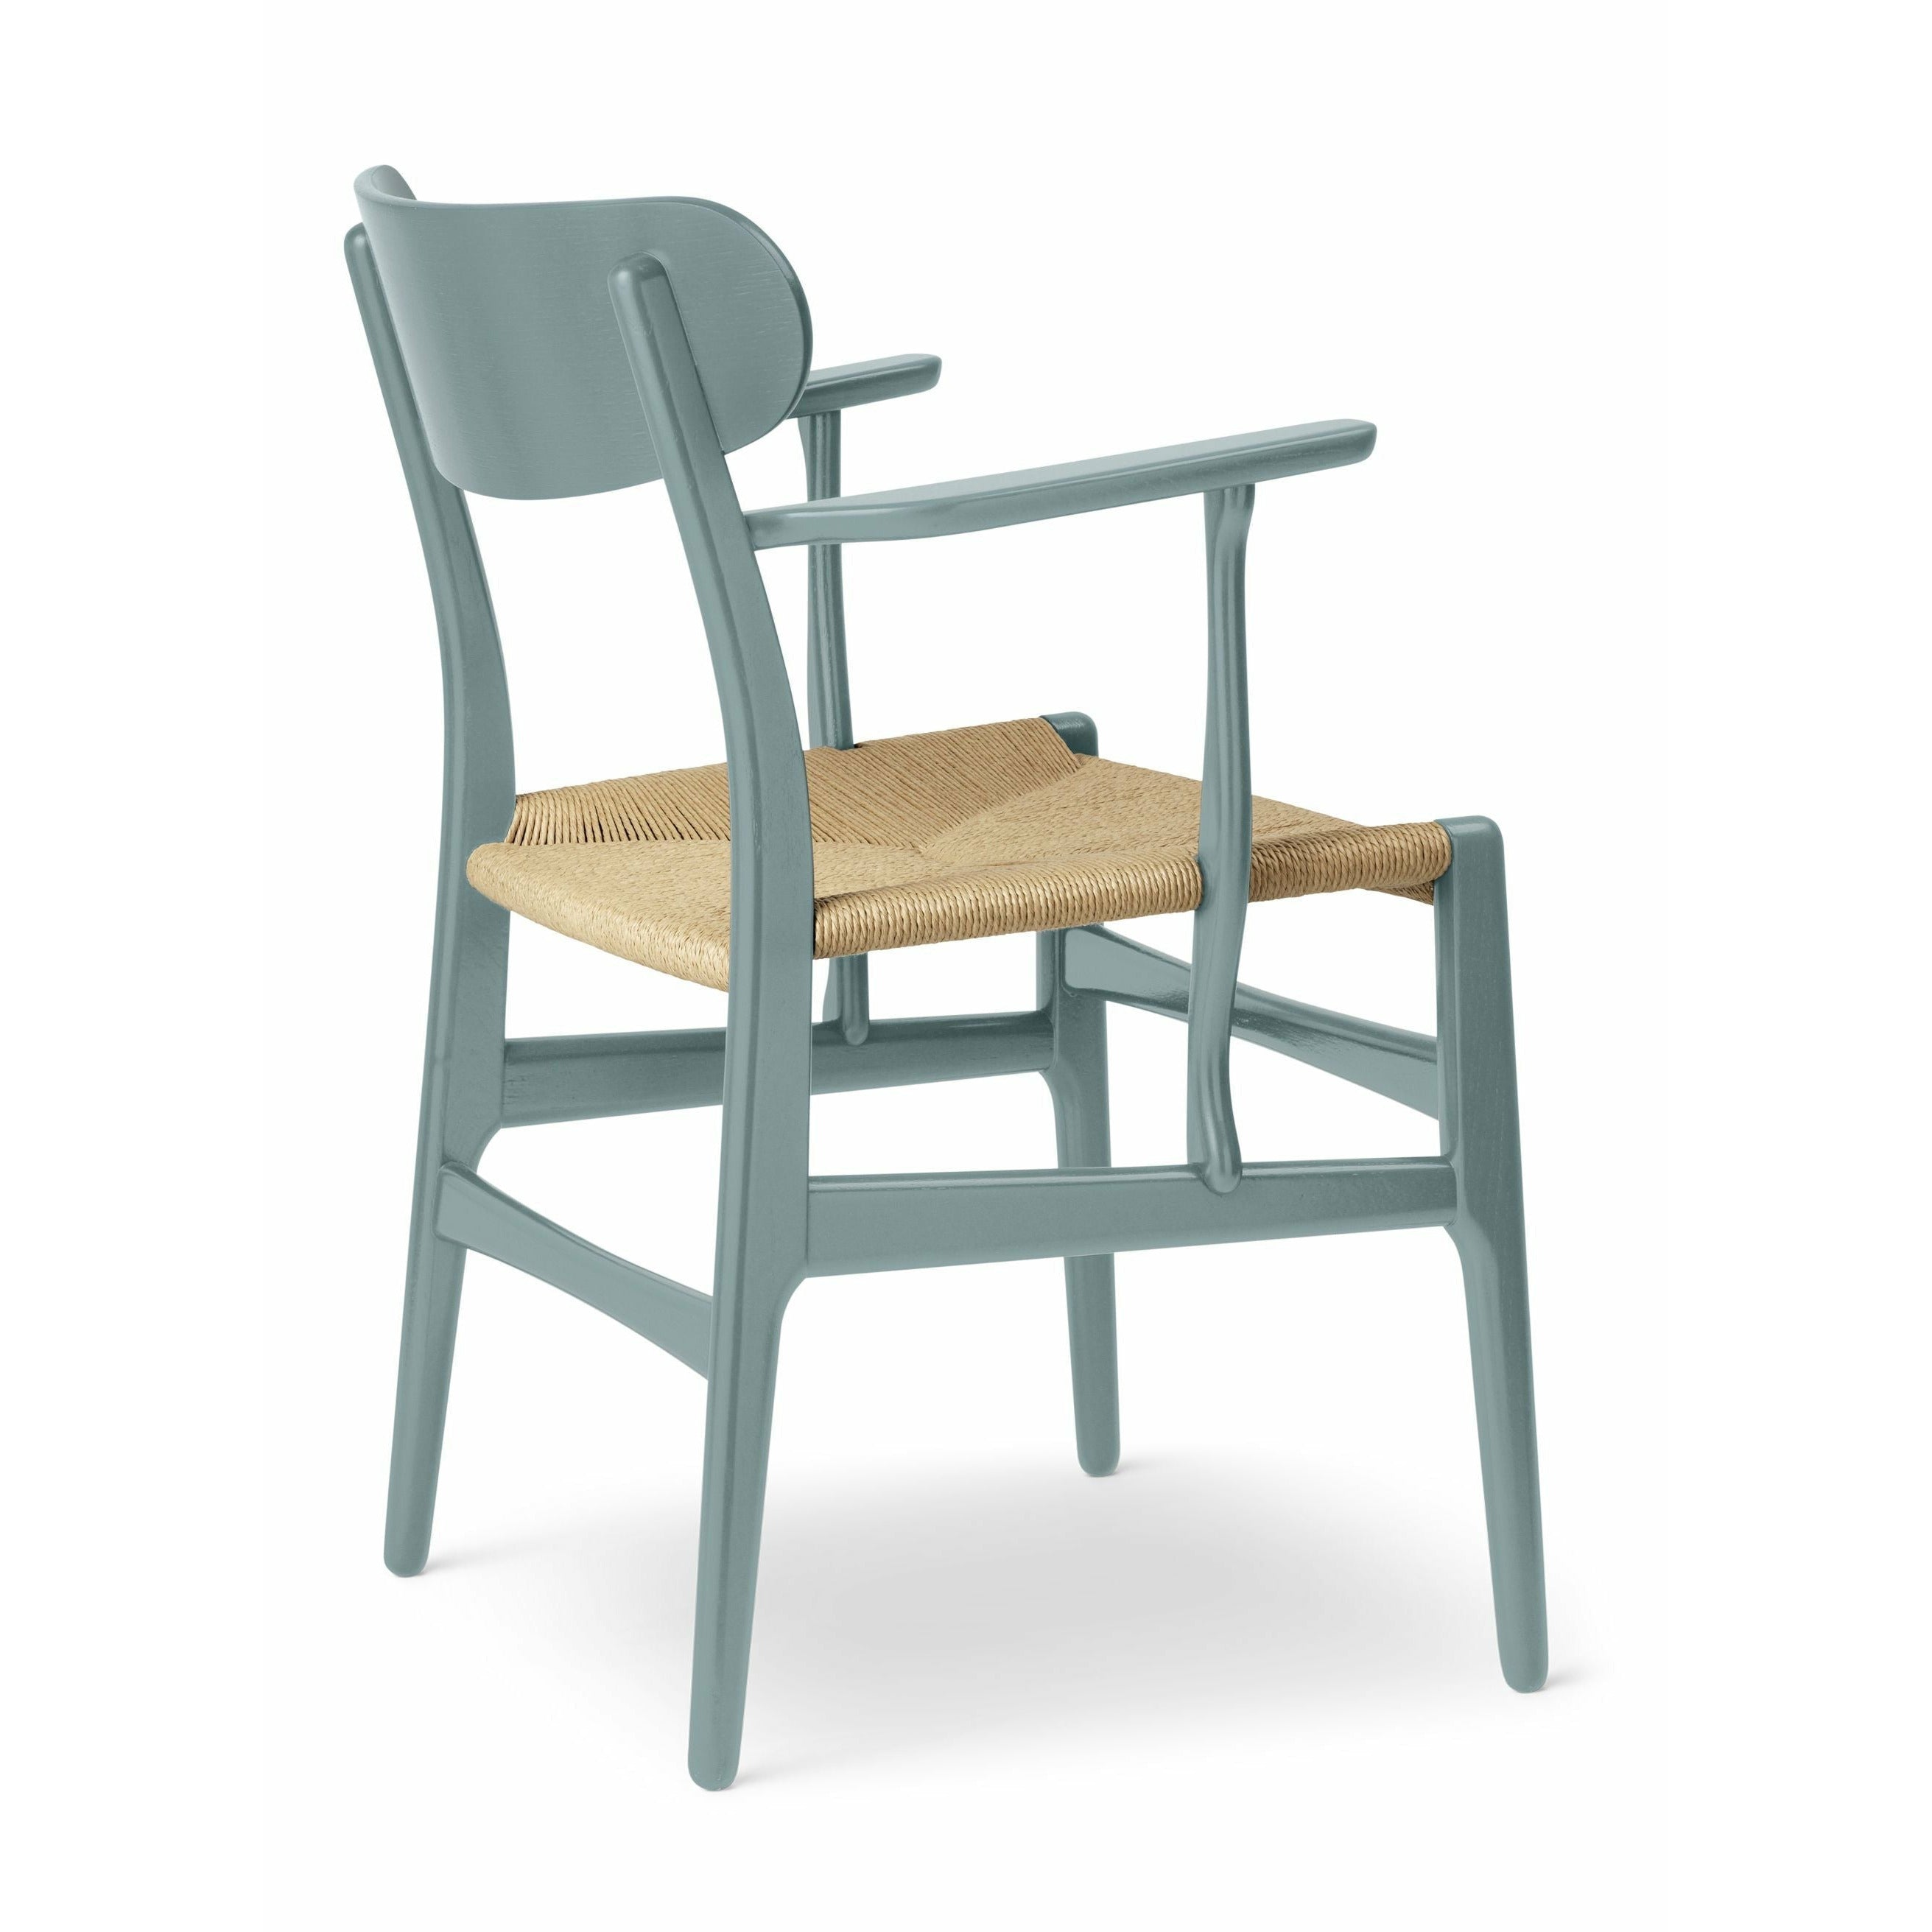 Carl Hansen CH26 Chair Oak, Pewter Blue/Nature Braid - Special Edition